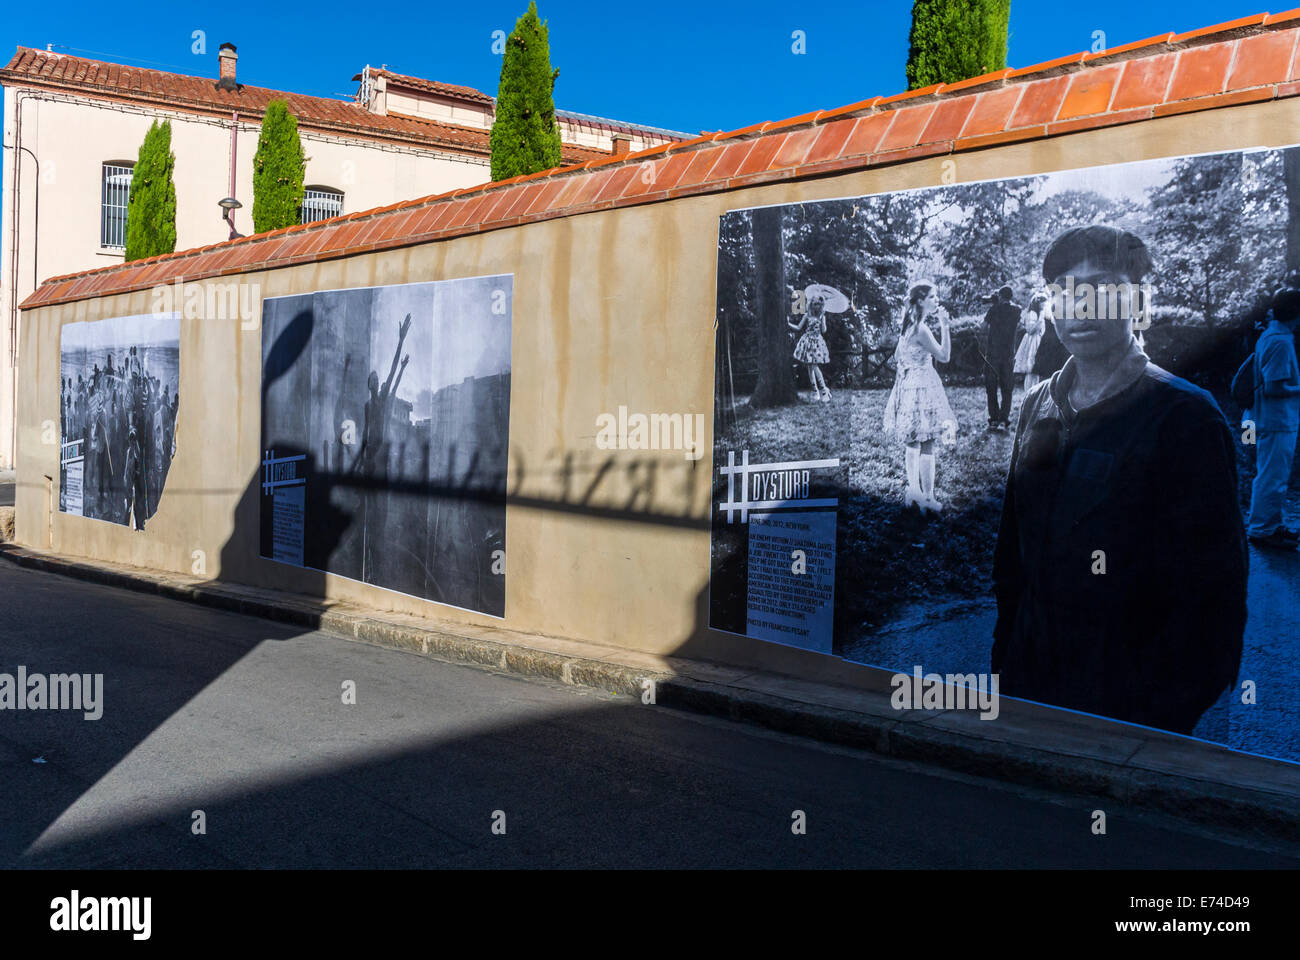 Perpignan, France, Festival de photojournalisme 'Visa pour l'image' exposition Galerie de photographie, extérieur sur les remparts, Affiches de rue Banque D'Images